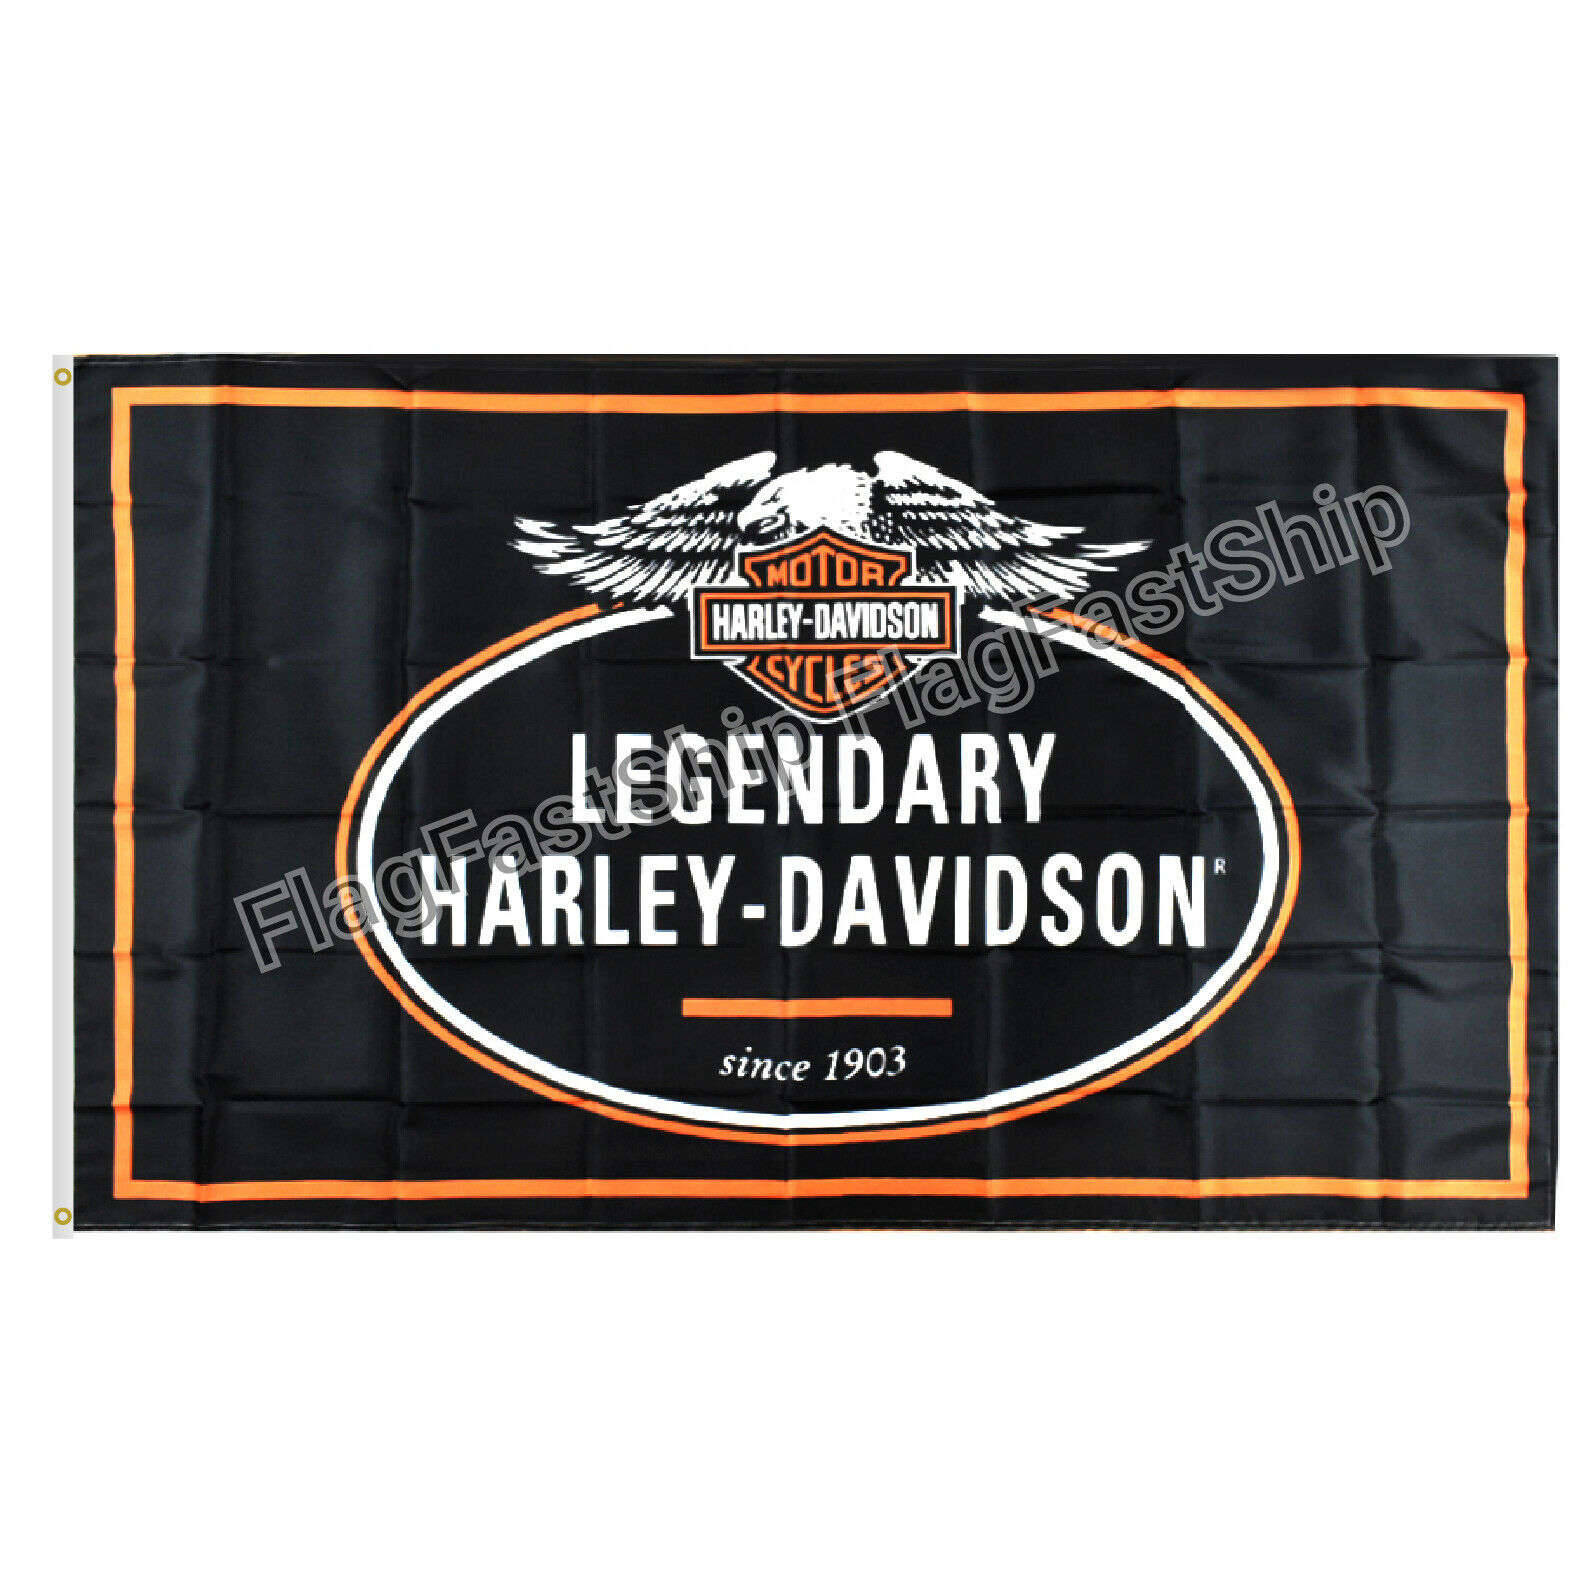 Harley Davidson Flag Banner 3x5 Ft Legendary Grommets Free Shipping Us Seller